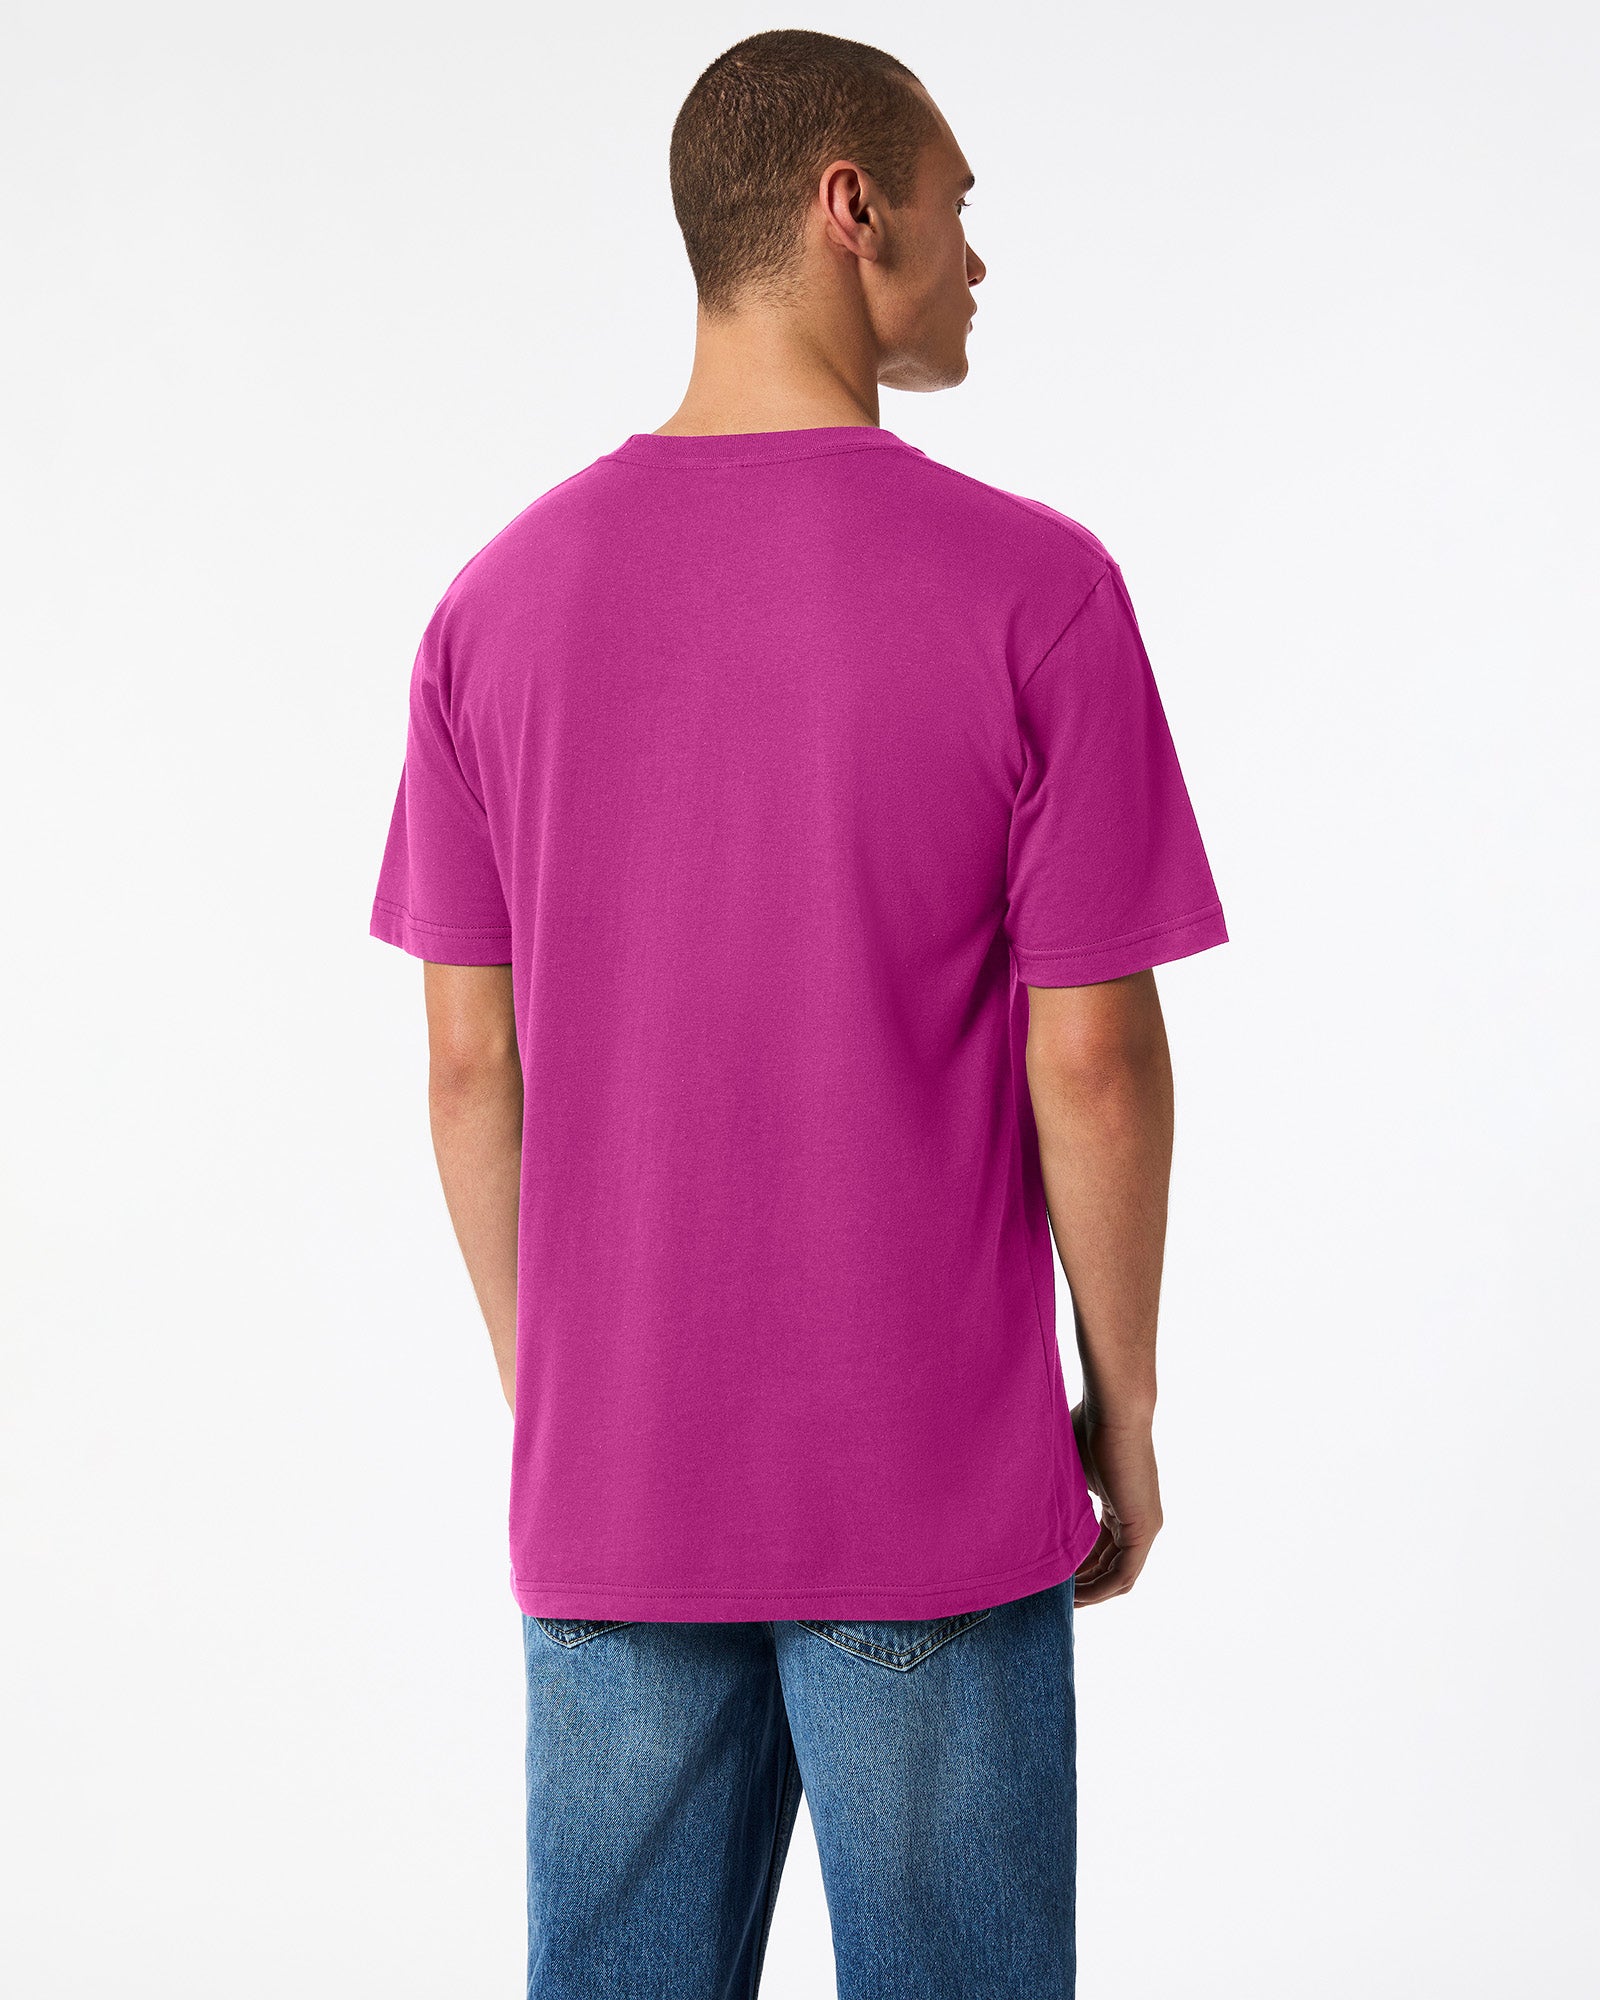 Fine Jersey Unisex Short Sleeve T-Shirt - Super Pink